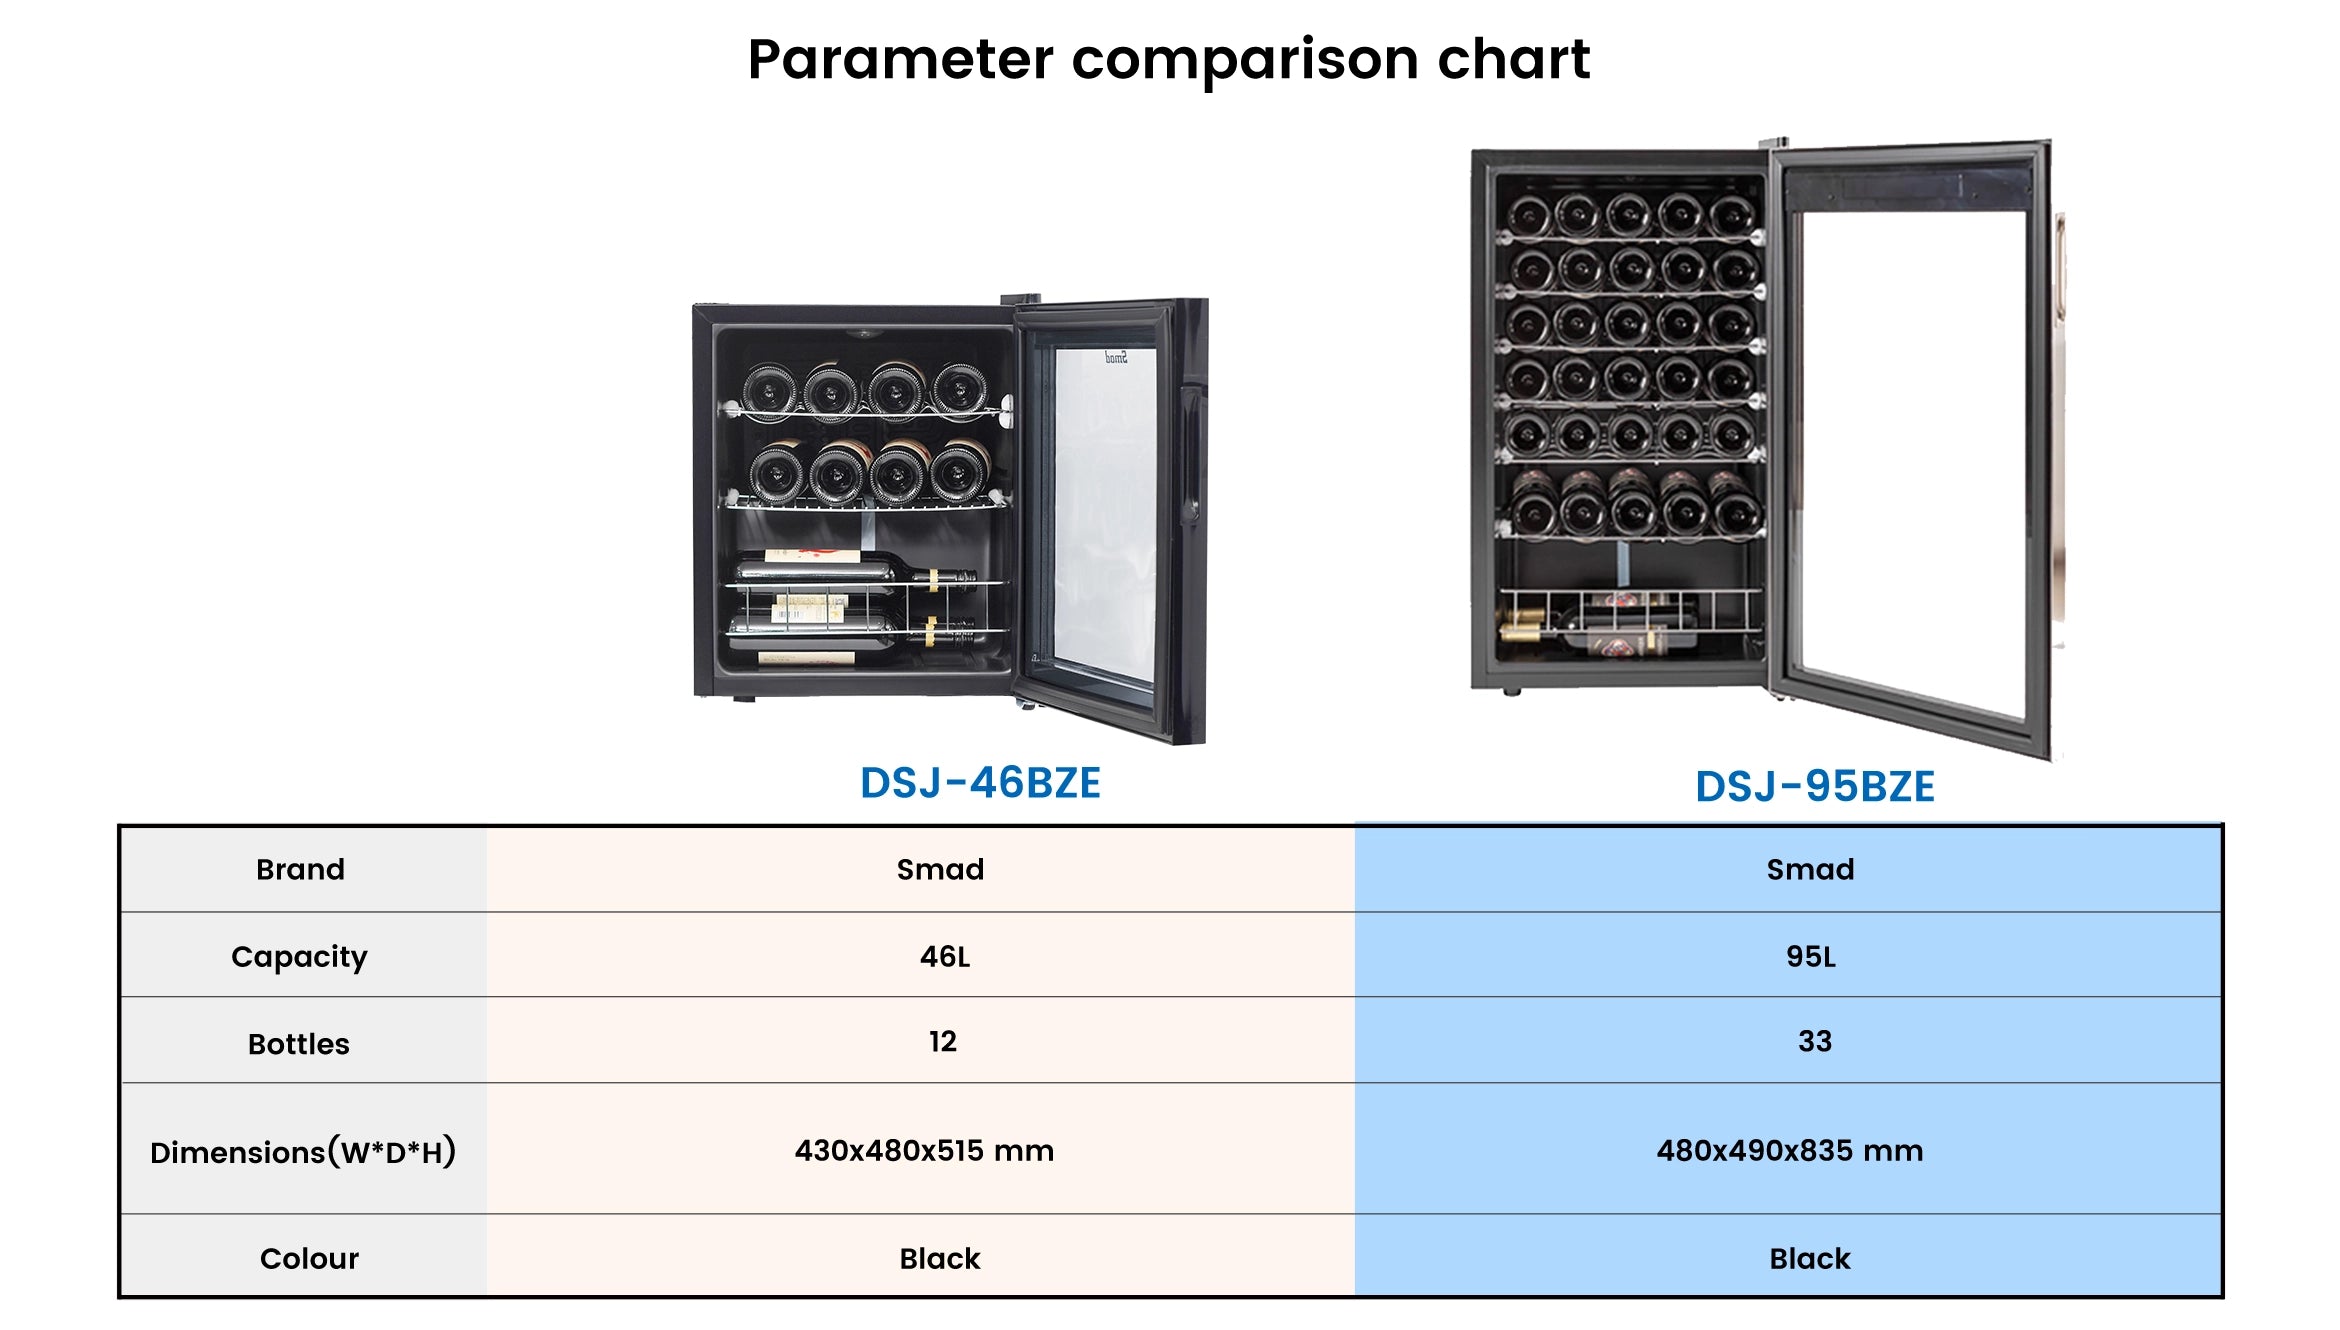 DSJ-46BZE Parameter comparison chart